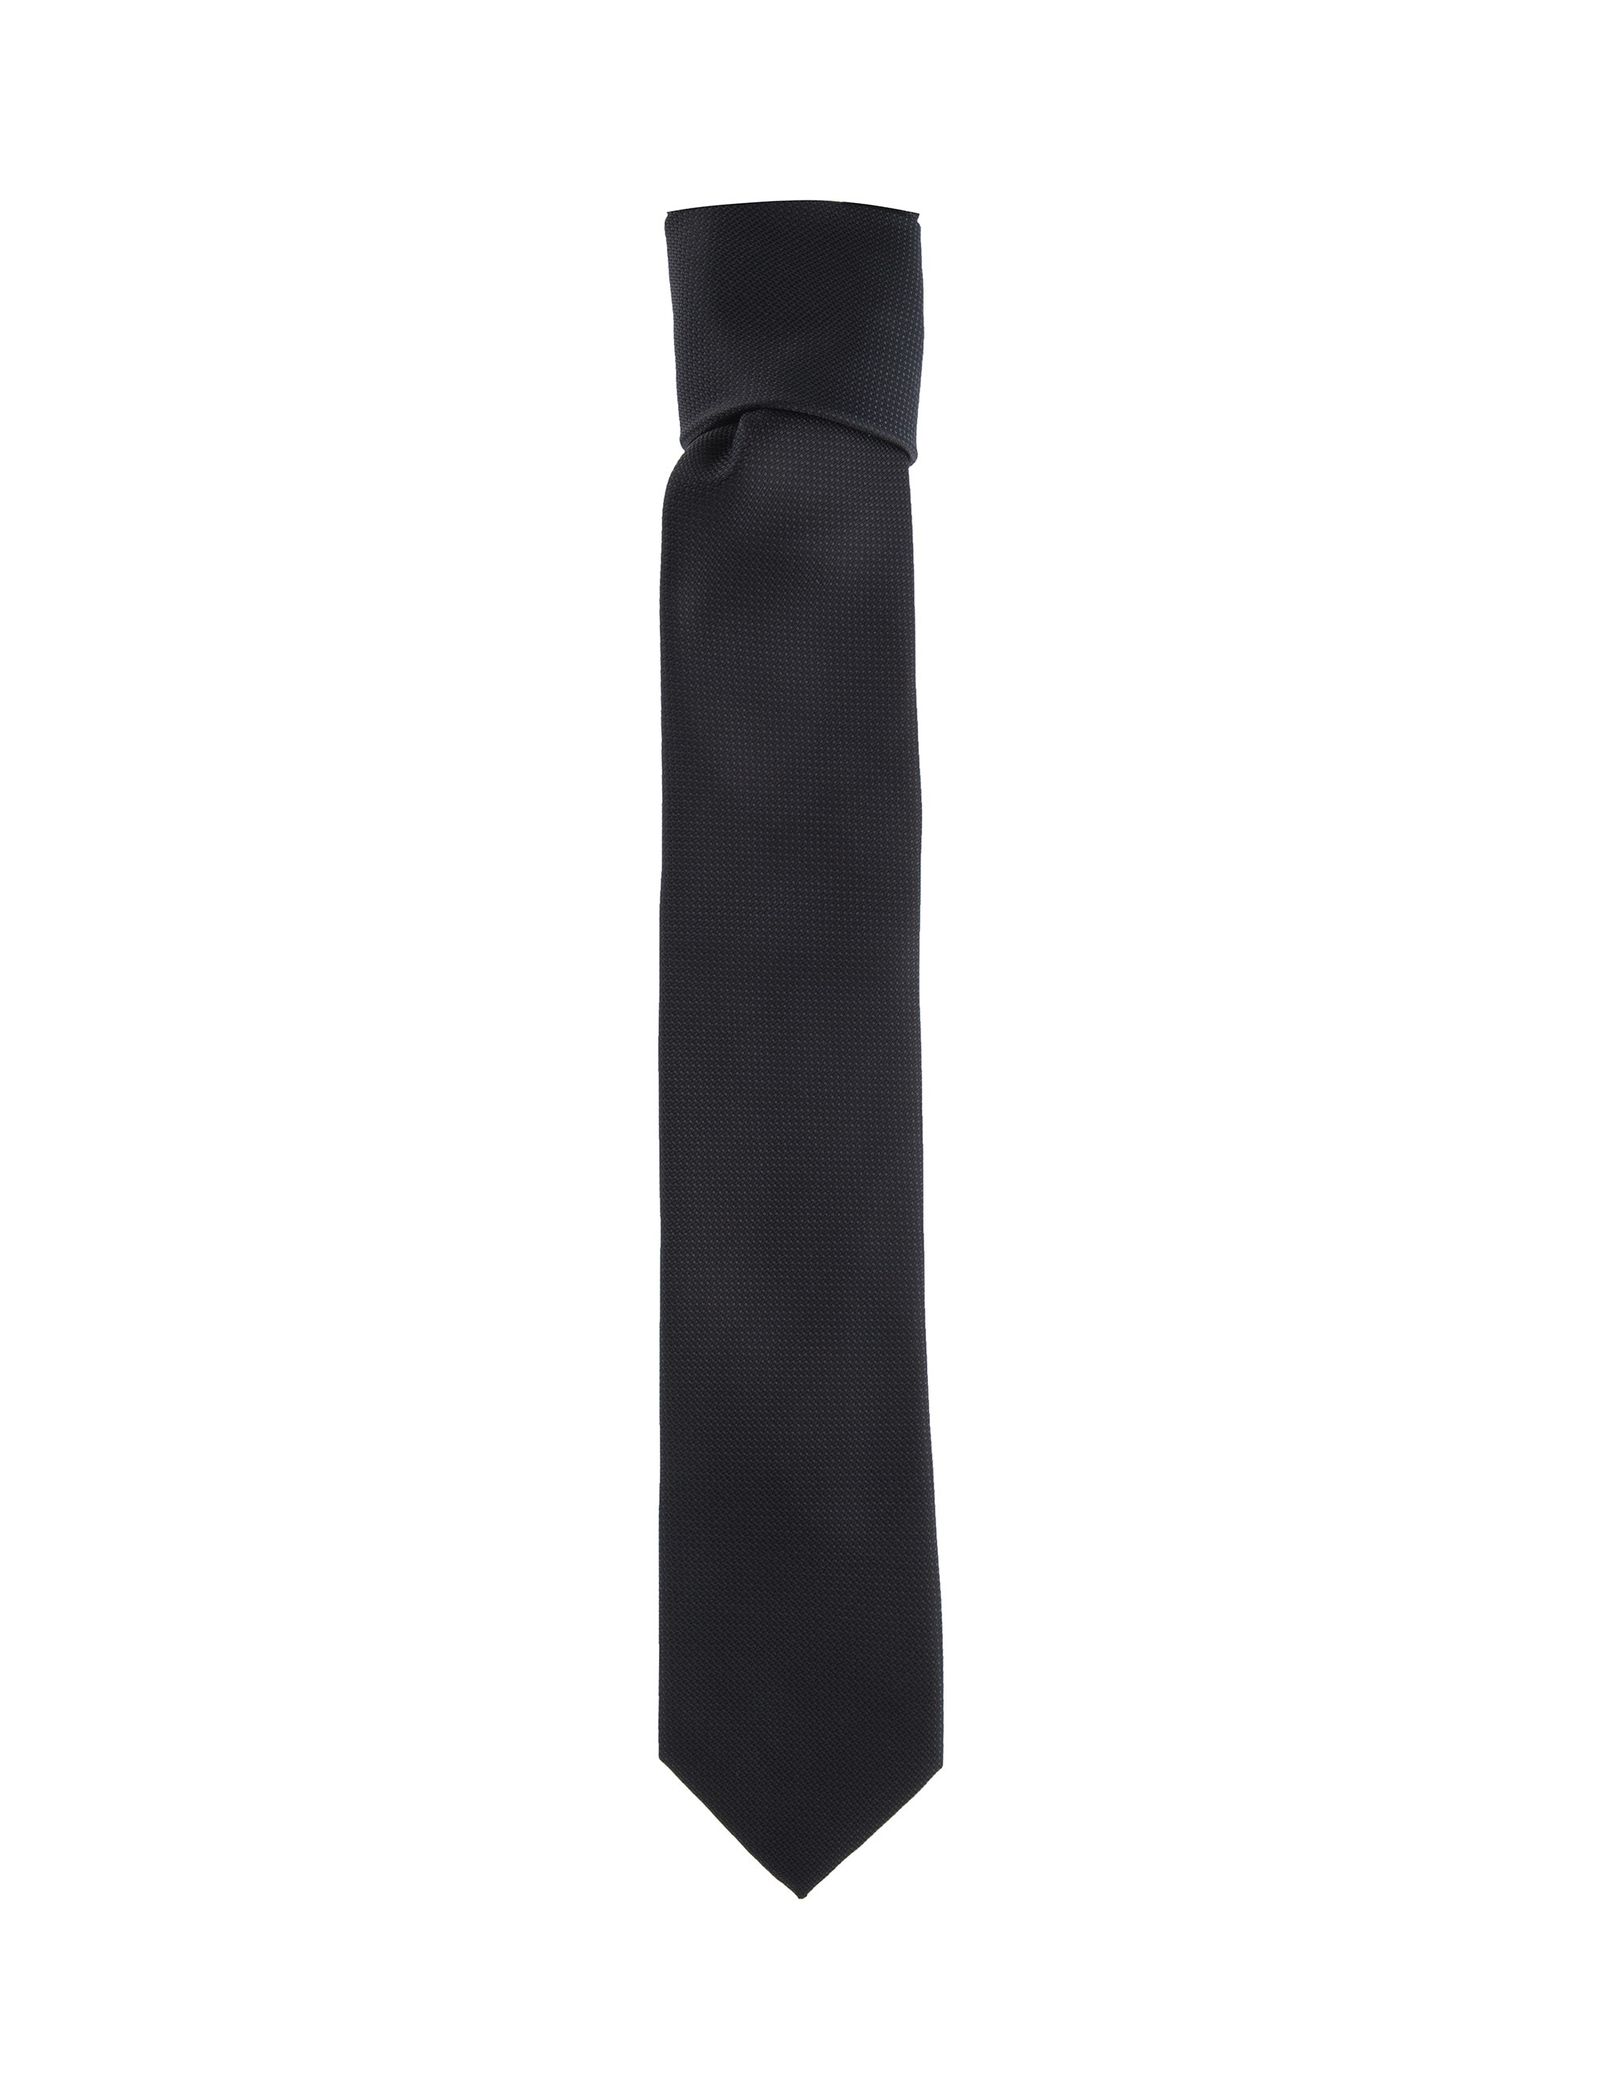 کراوات طرح دار مردانه - یوپیم تک سایز - مشکي - 2